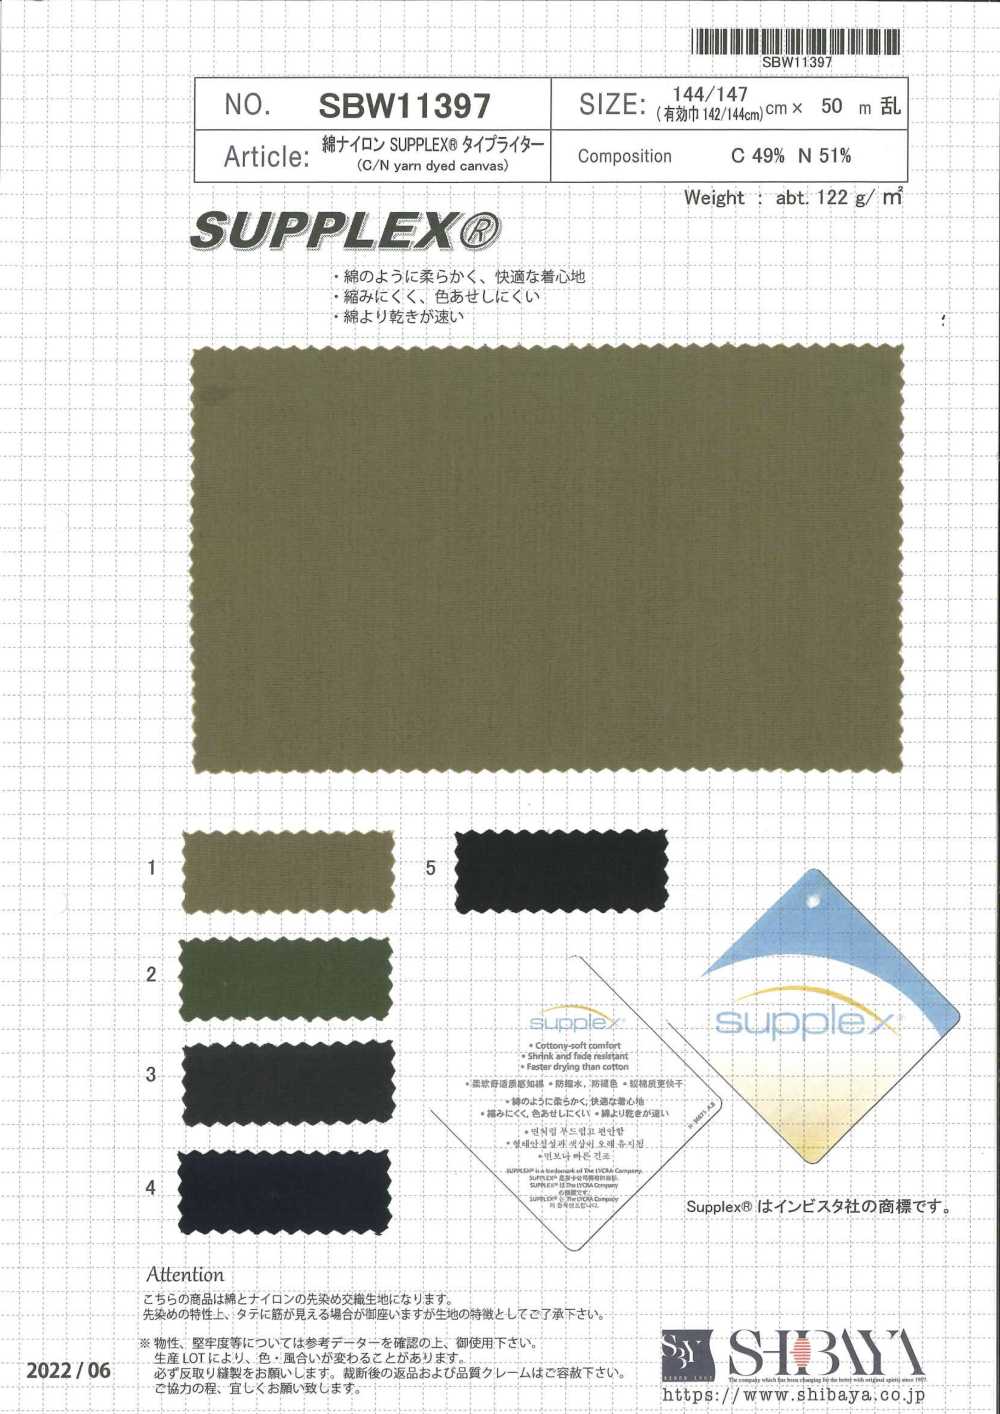 SBW11397 Pano Para Máquina De Escrever De Algodão Nylon SUPLLEX®[Têxtil / Tecido] SHIBAYA